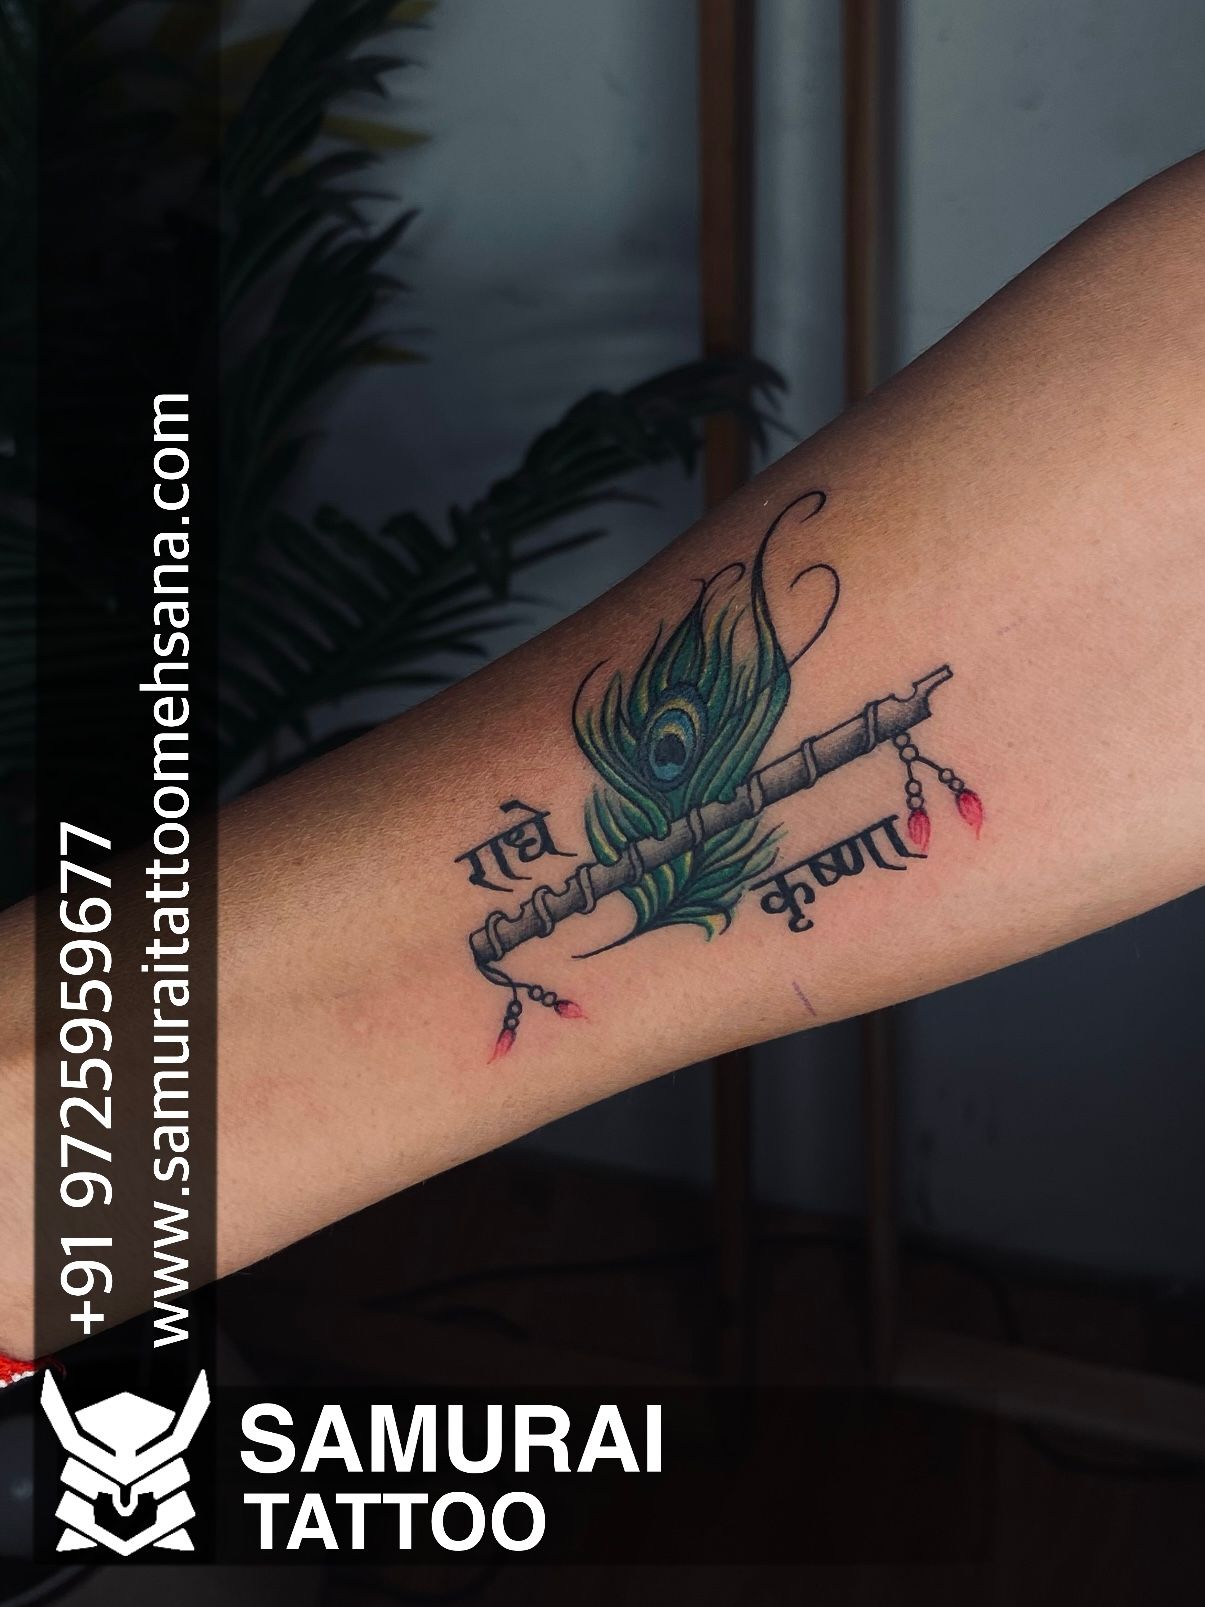 Tattoo uploaded by Vipul Chaudhary • Flute with feather tattoo |Tattoo for  krishna |Dwarkadhish tattoo |Lord krishna tattoo • Tattoodo